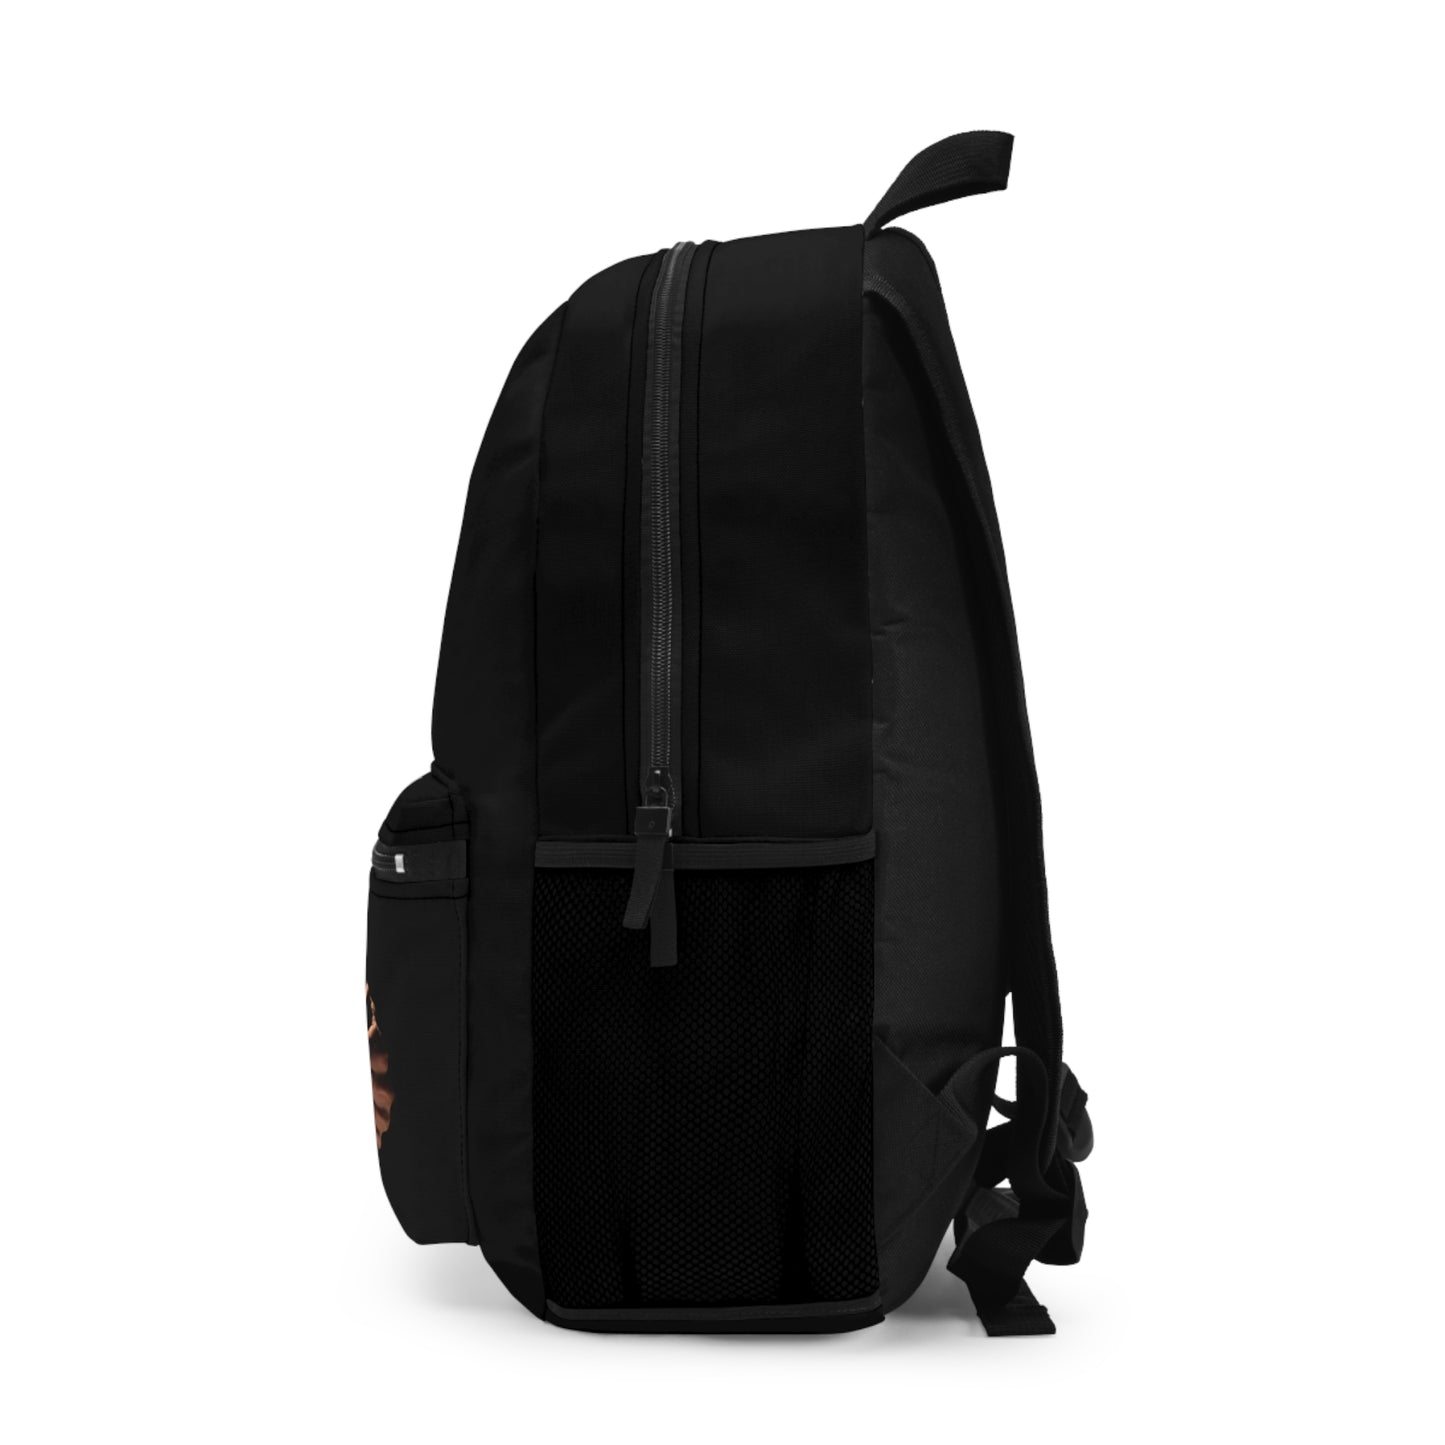 Ableiva - Black Backpack